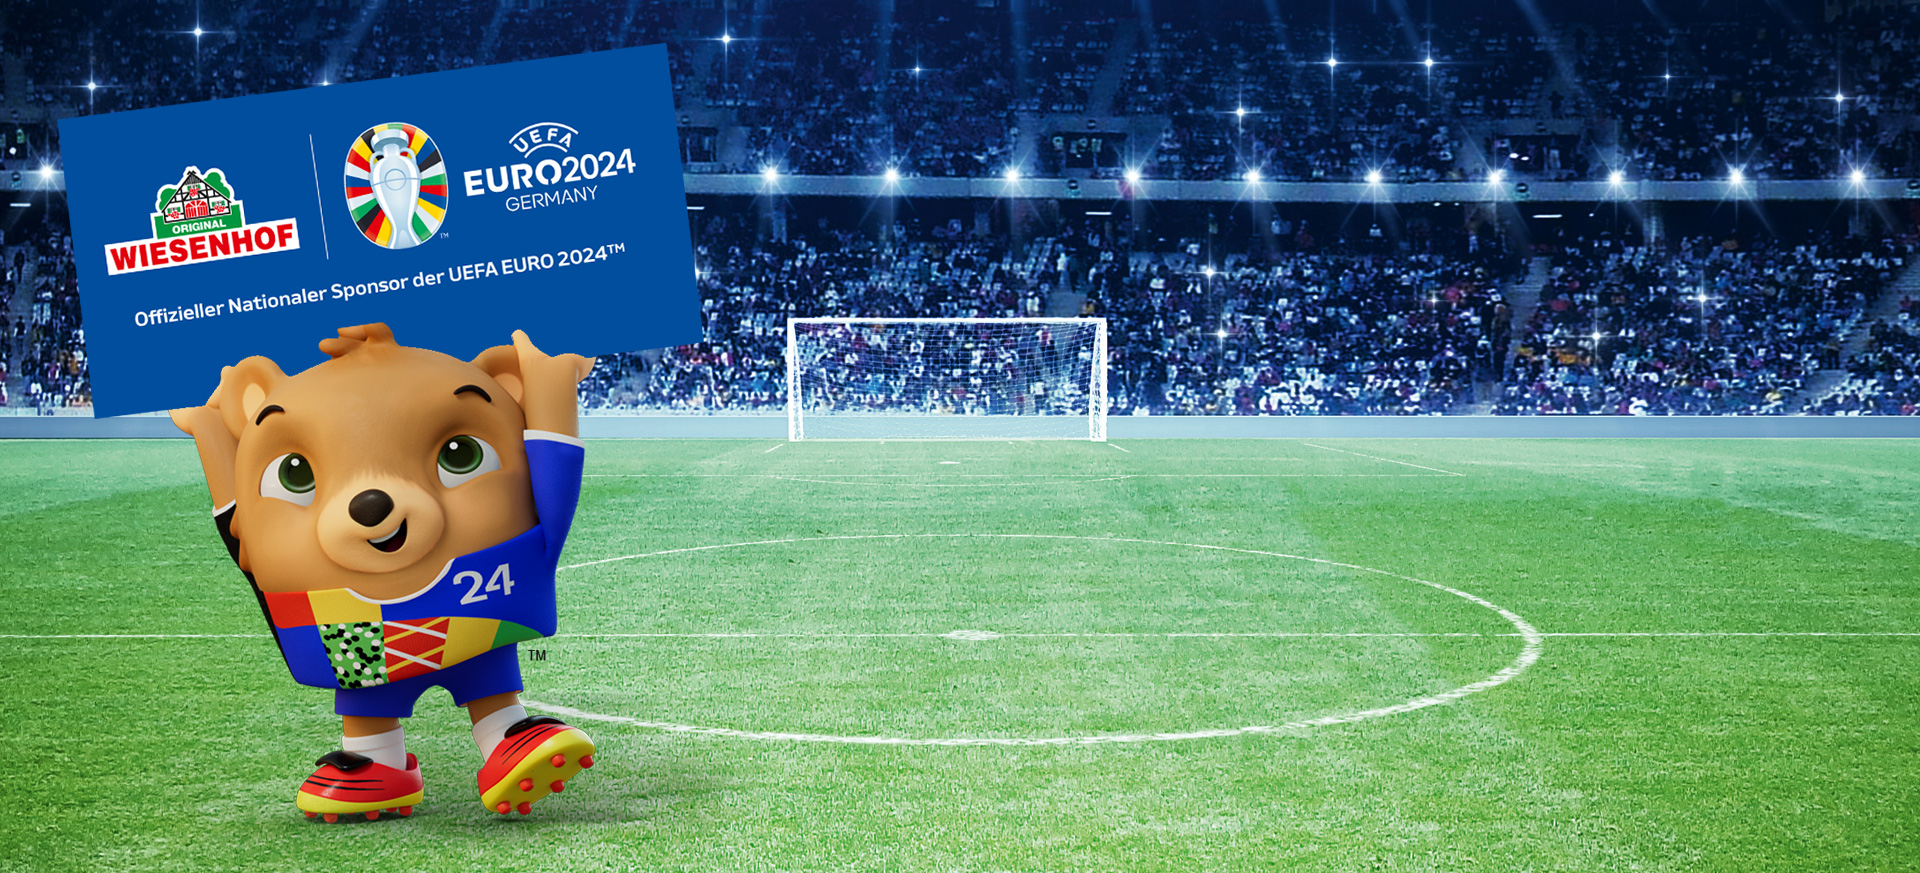 IESENHOF ist offizieller Nationaler Sponsor der UEFA EURO 2024™ in Deutschland.